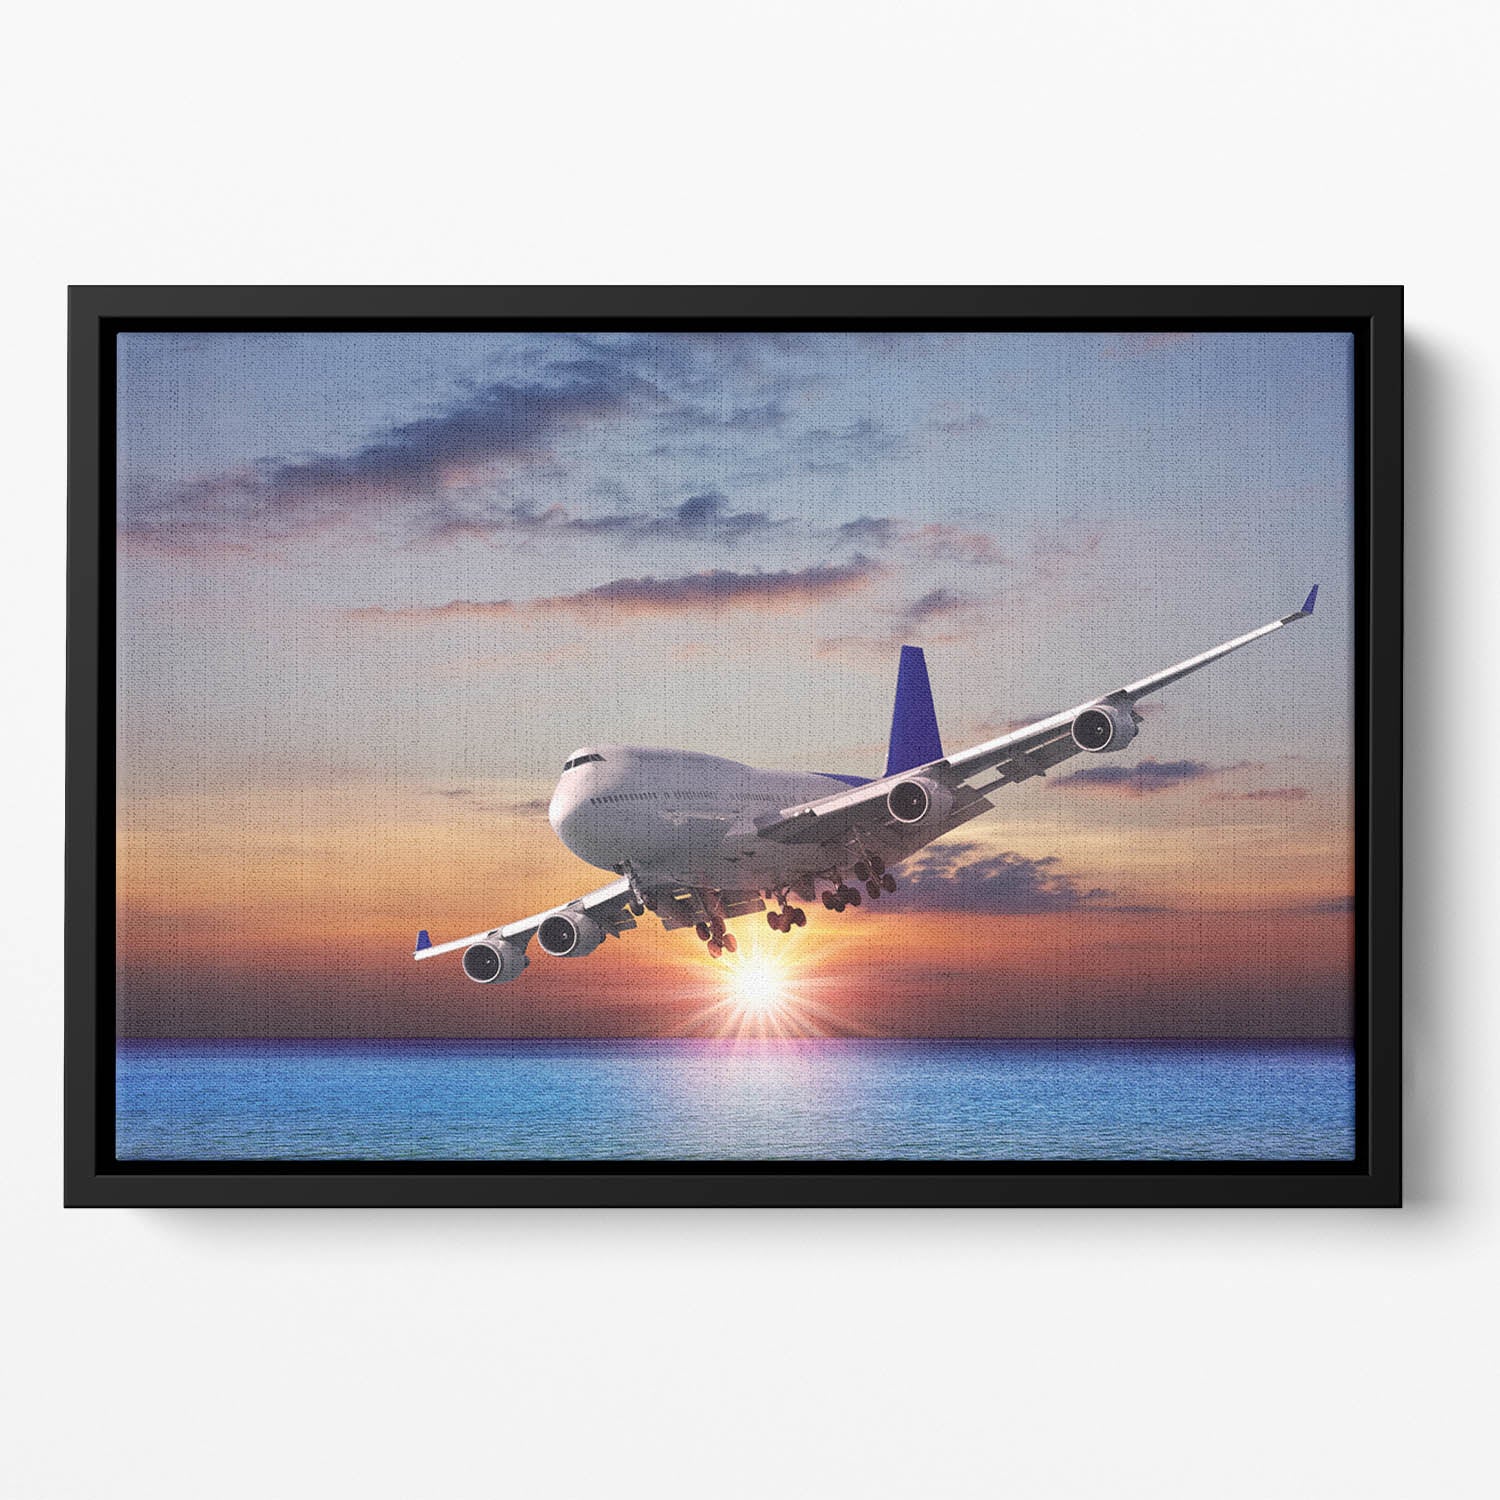 Jet liner over the sea at dusk Floating Framed Canvas